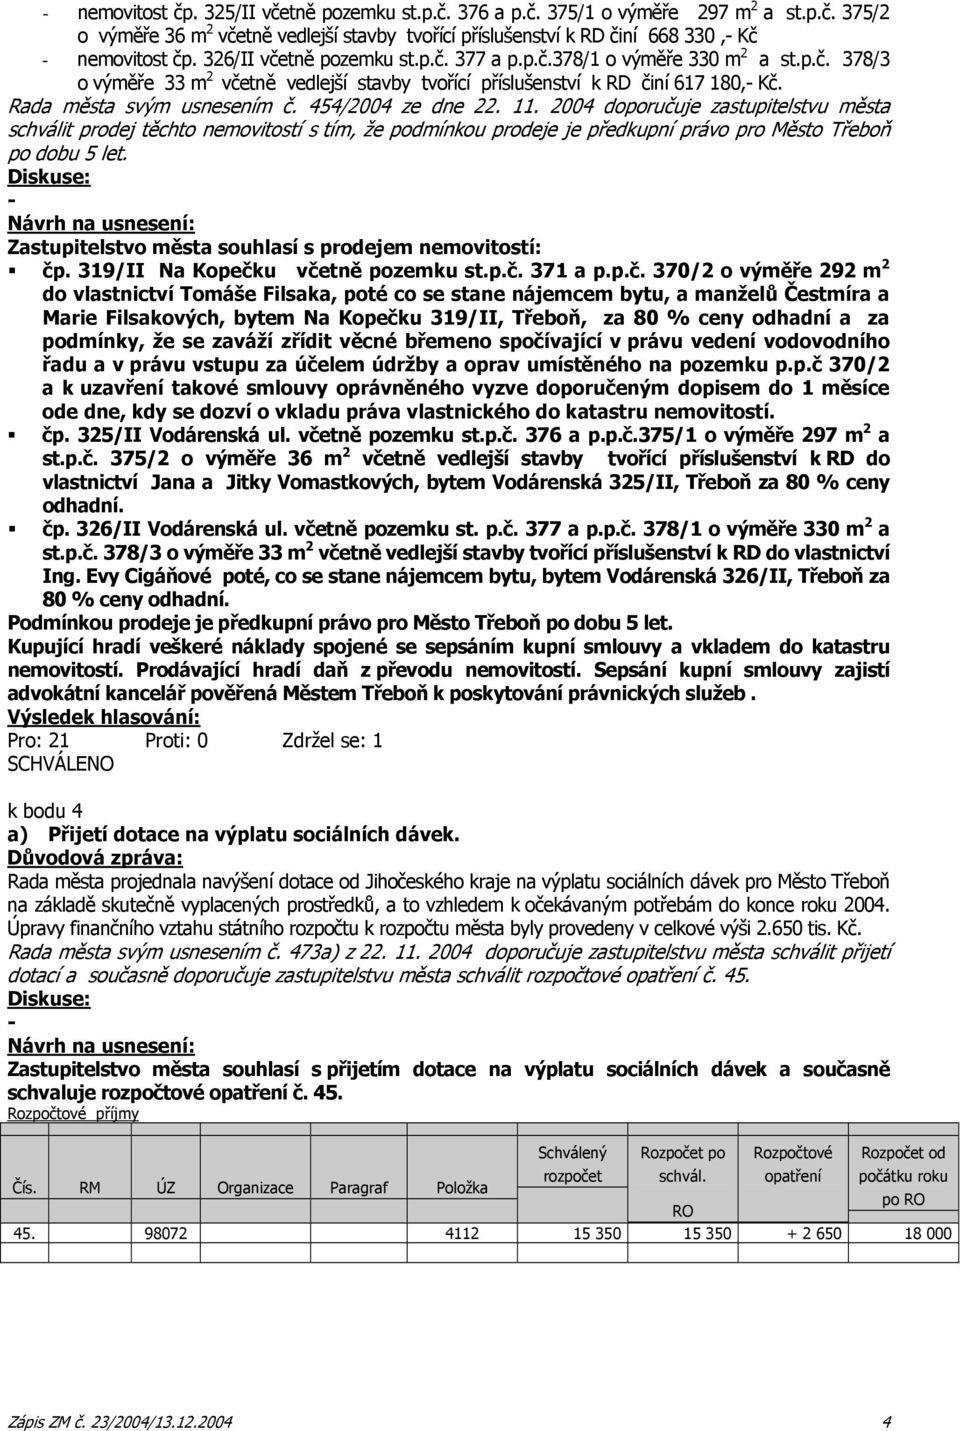 454/2004 ze dne 22. 11. 2004 doporučuje zastupitelstvu města schválit prodej těchto nemovitostí s tím, že podmínkou prodeje je předkupní právo pro Město Třeboň po dobu 5 let.